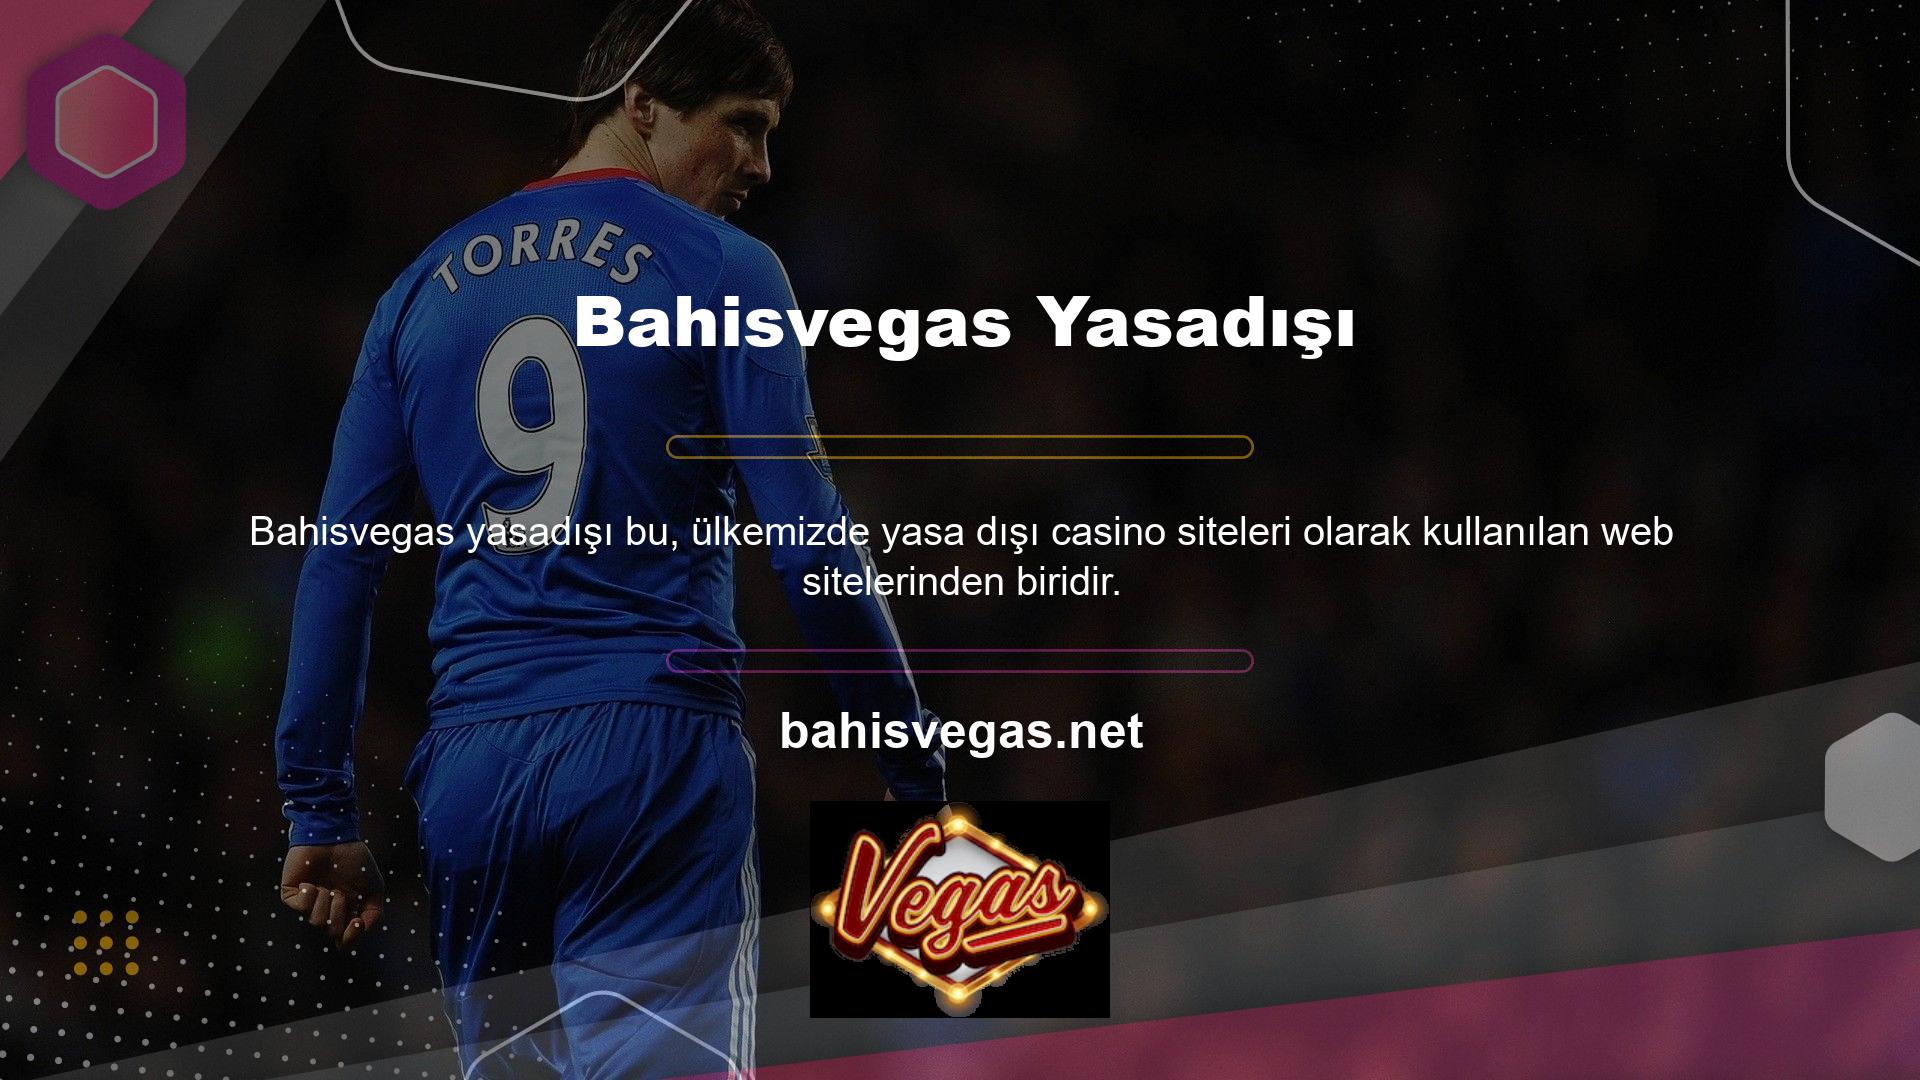 Bahisvegas Yeni Adresi Site ayrıca canlı casino bölümü de sunmaktadır